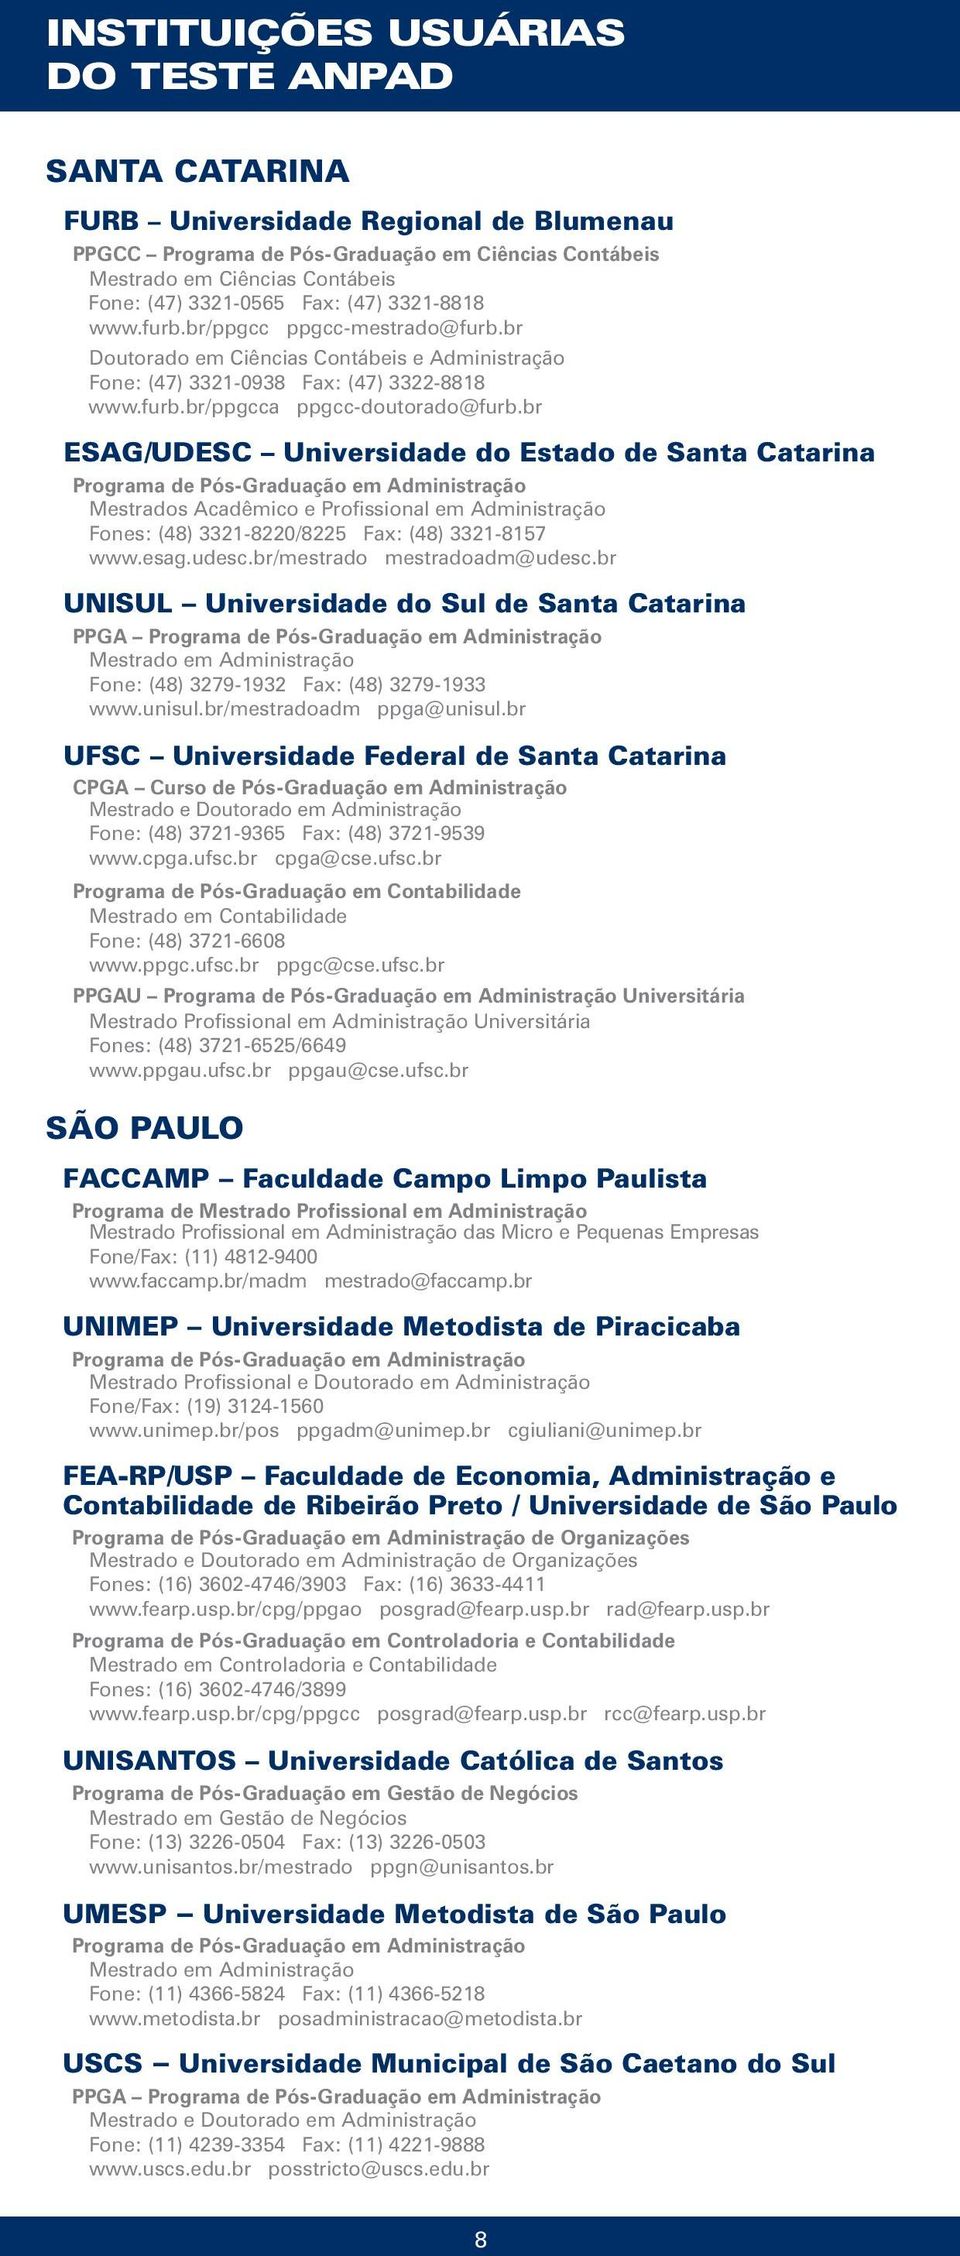 br ESAG/UDESC Universidade do Estado de Santa Catarina Mestrados Acadêmico e Profissional em Administração Fones: (48) 3321-8220/8225 Fax: (48) 3321-8157 www.esag.udesc.br/mestrado mestradoadm@udesc.